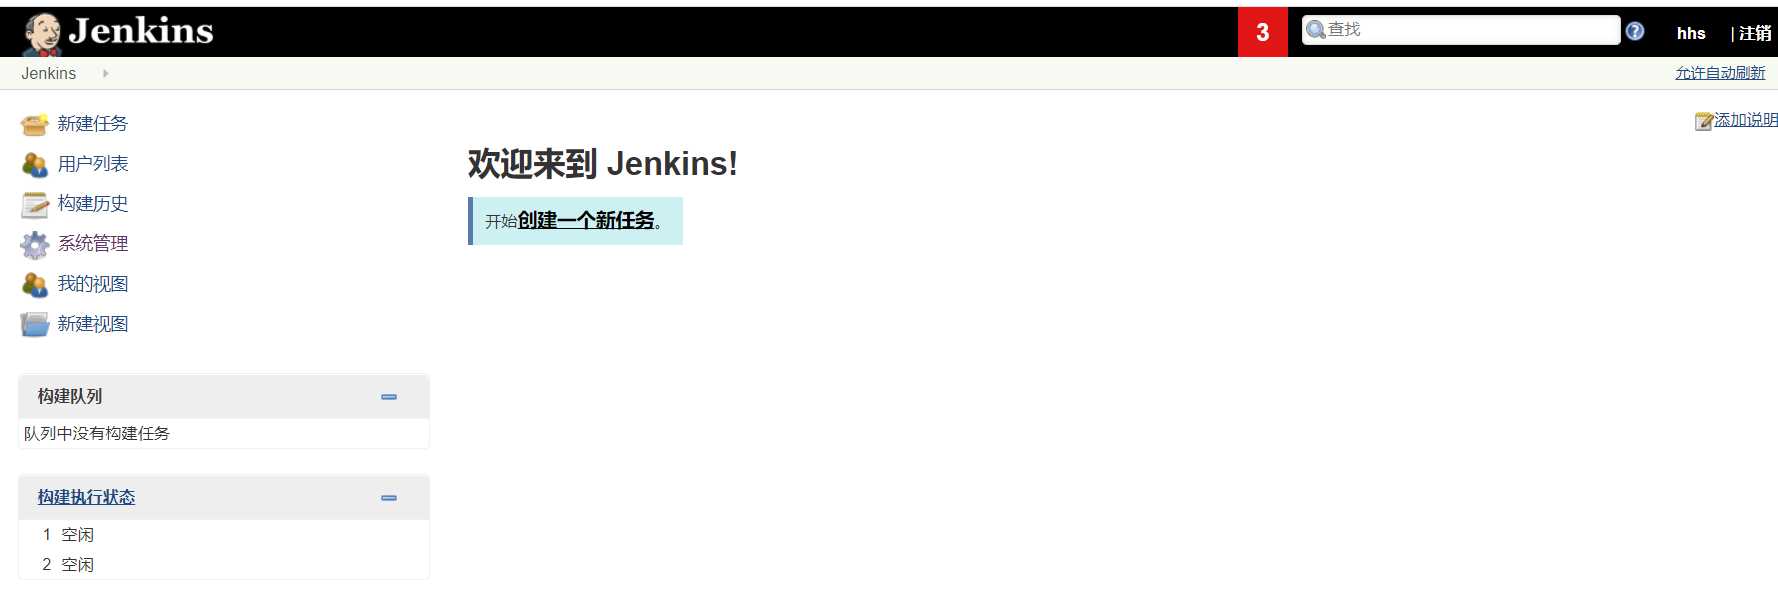 linux 安装Jenkins和配置